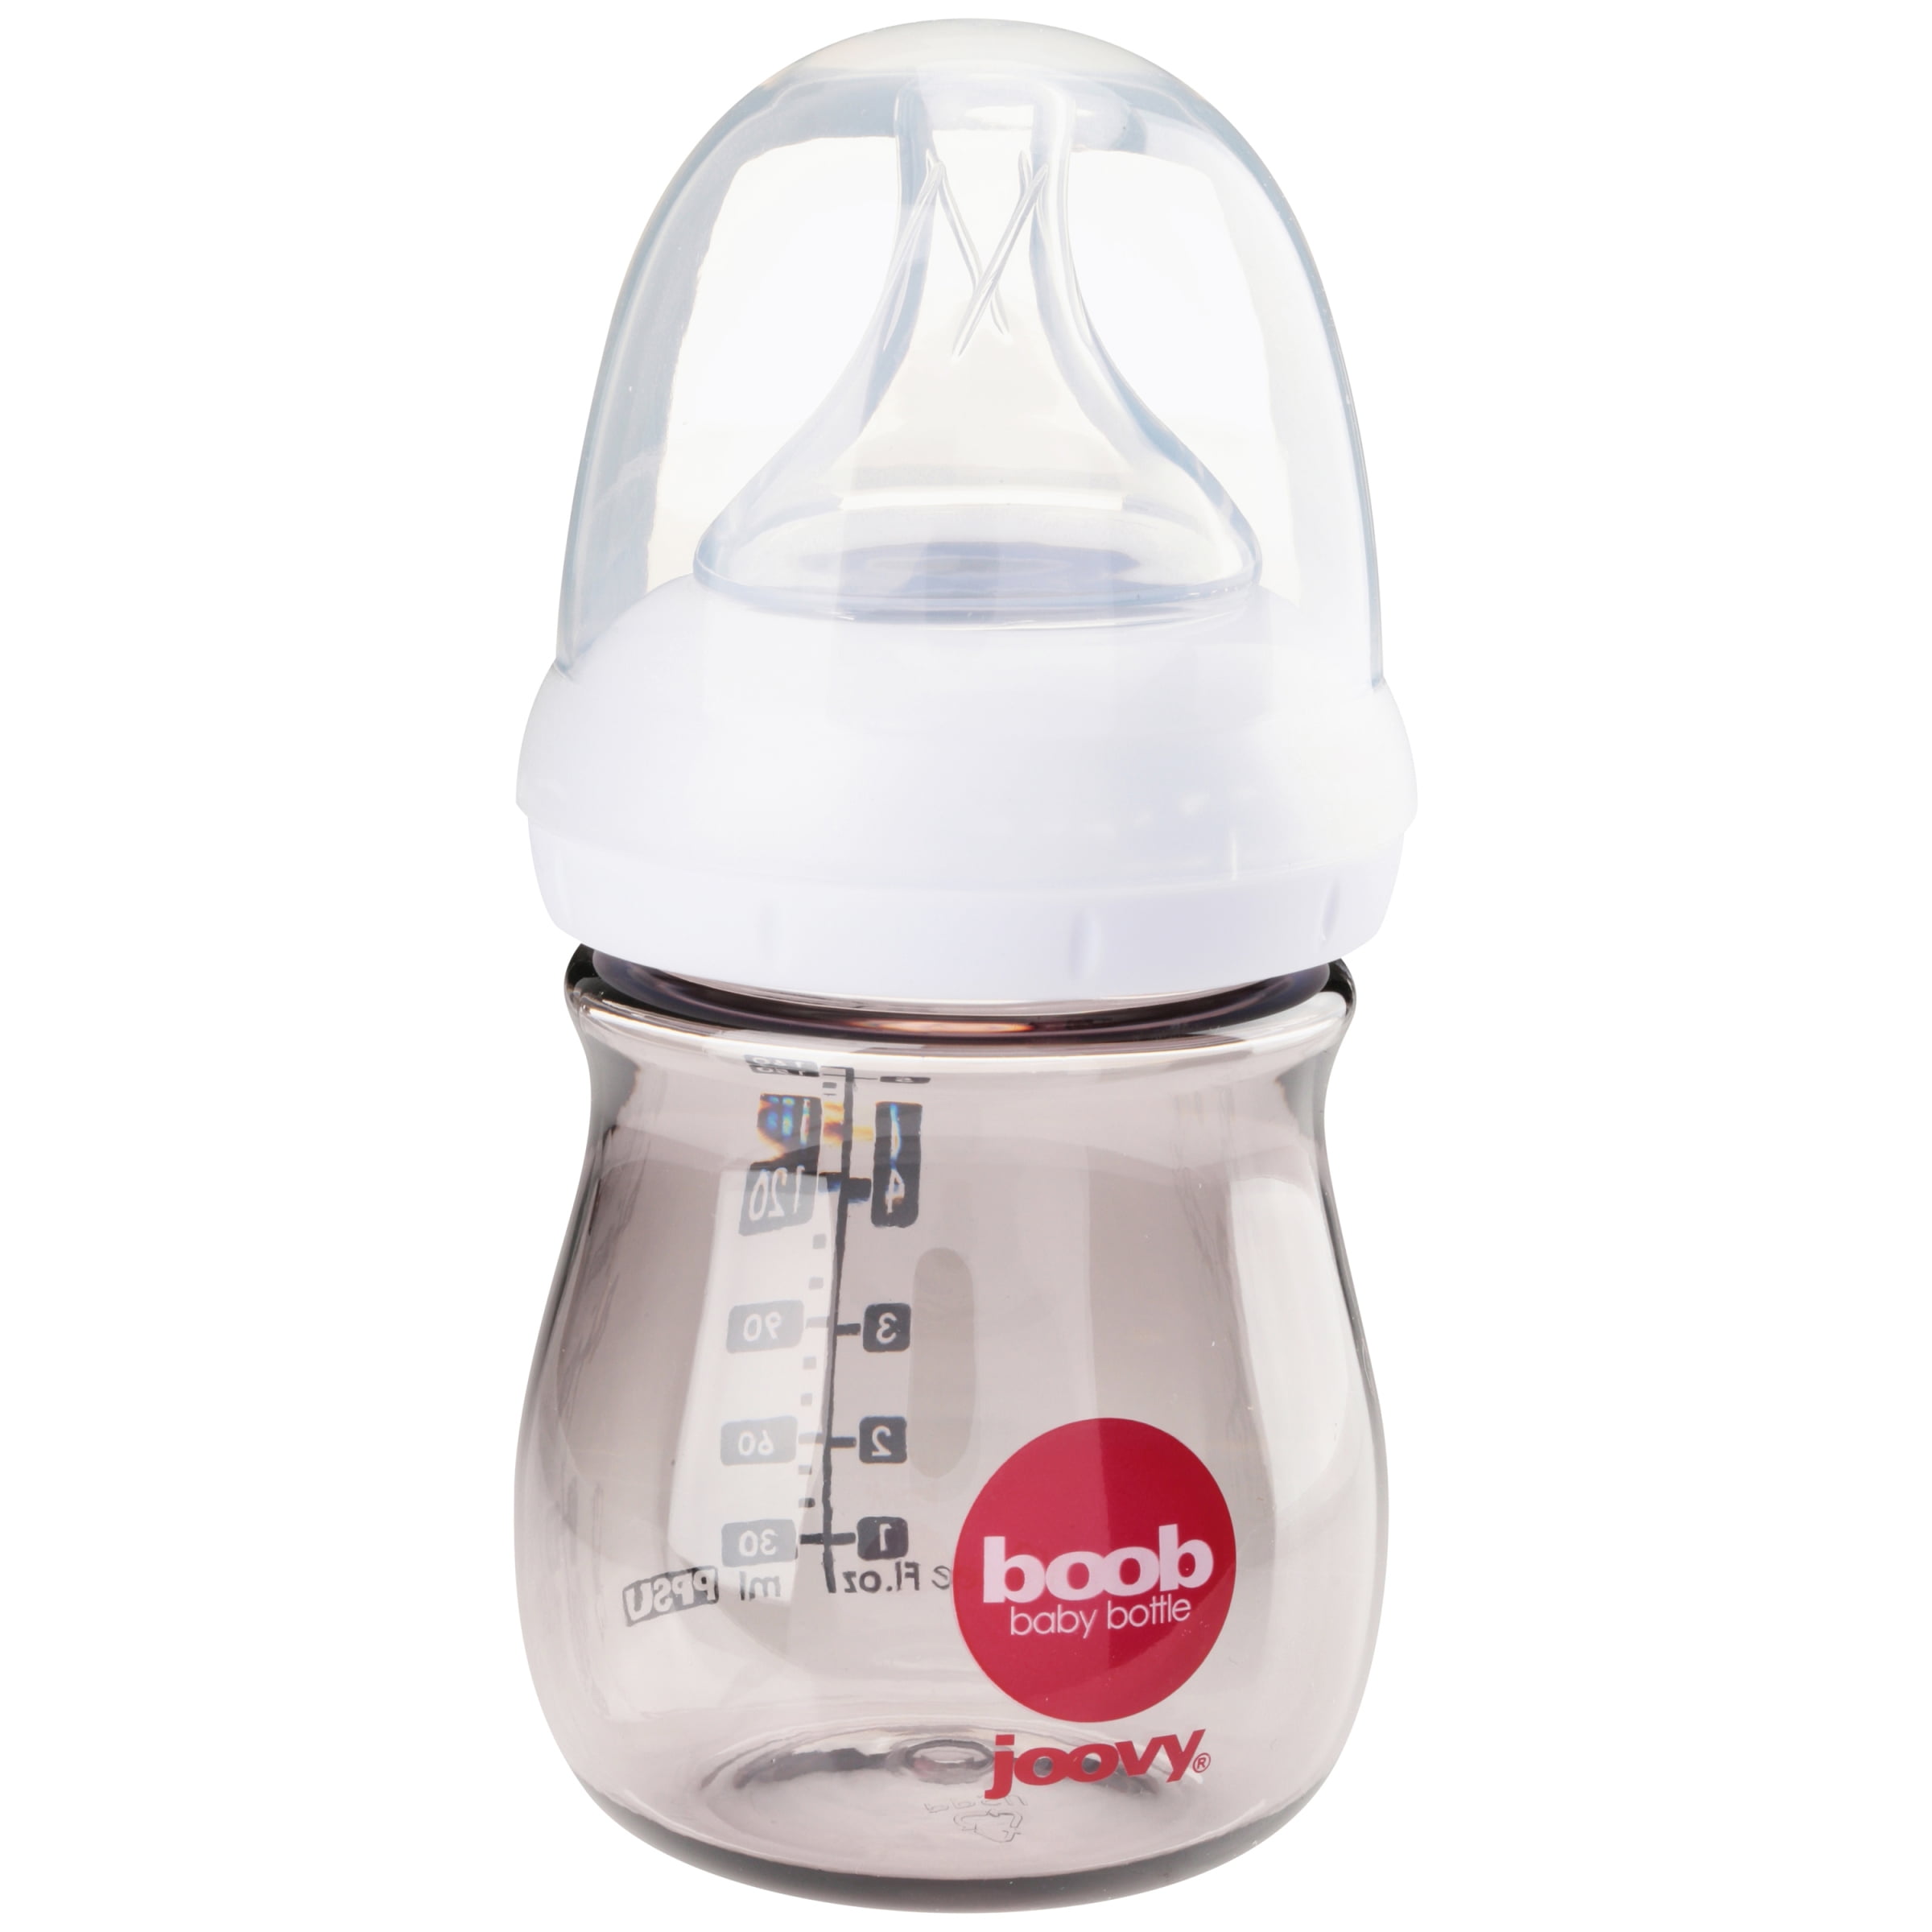 boob bottle